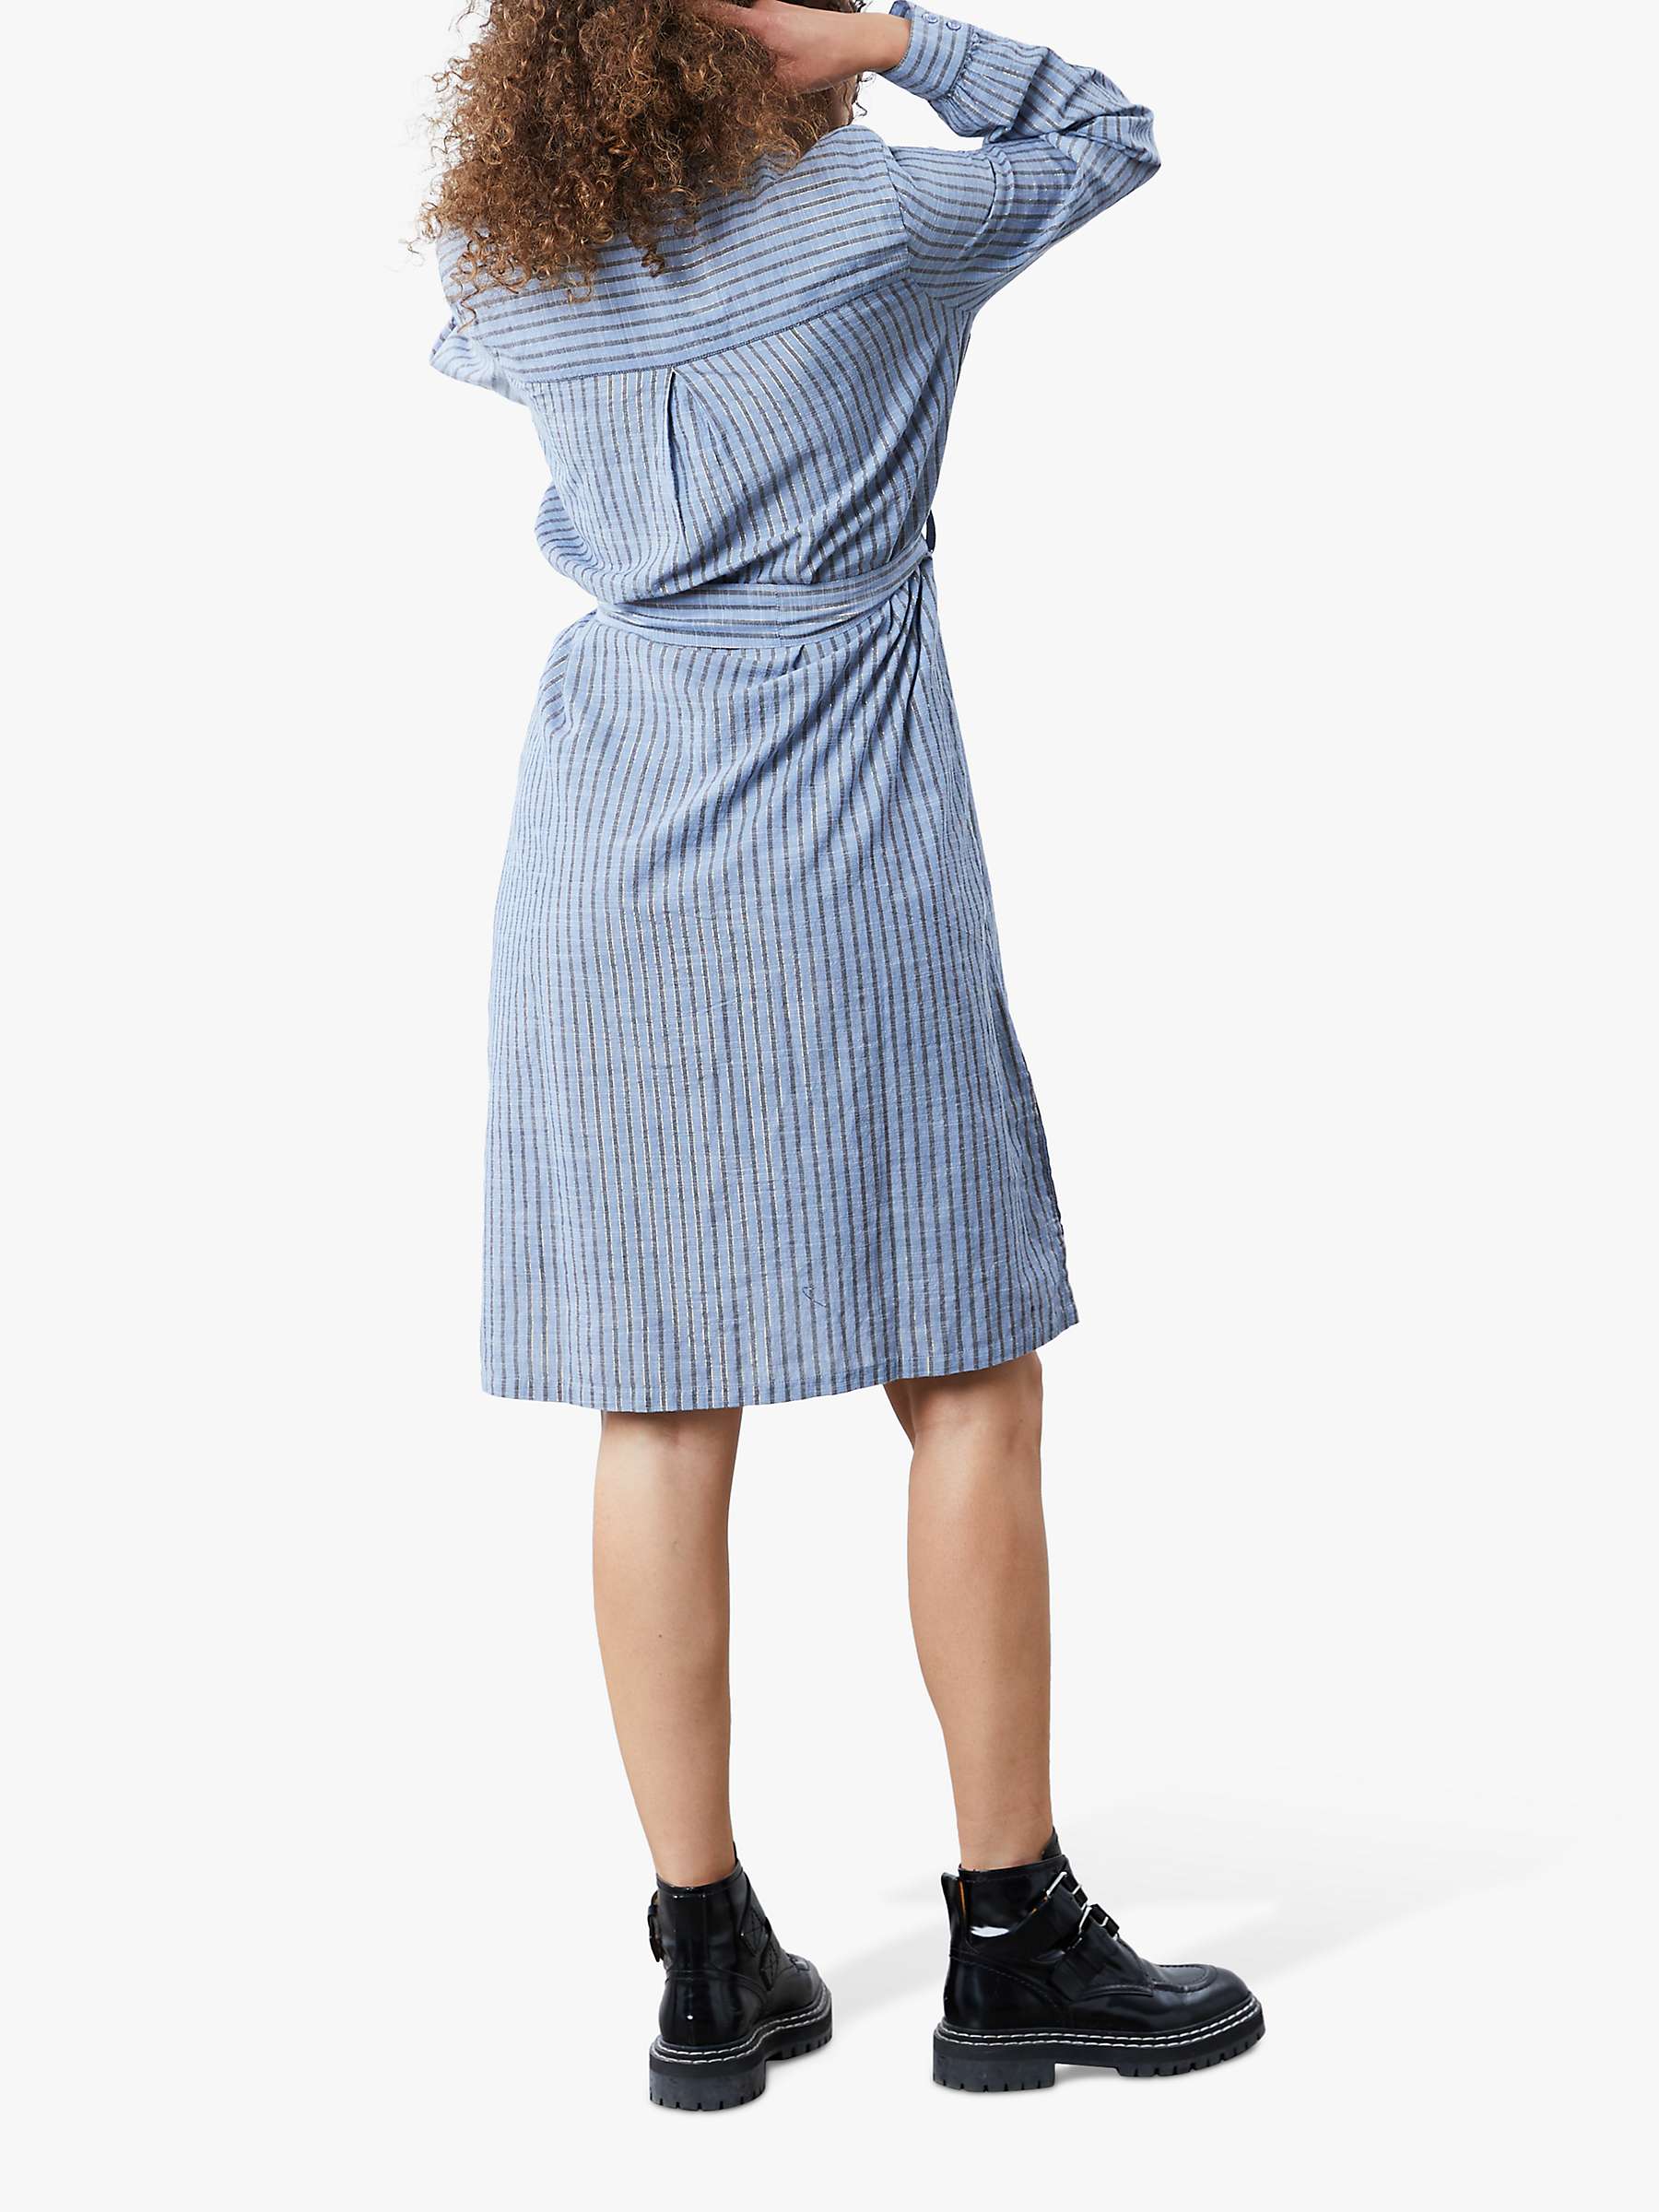 Buy Lollys Laundry Vega Stripe Shirt Dress, Blue Online at johnlewis.com